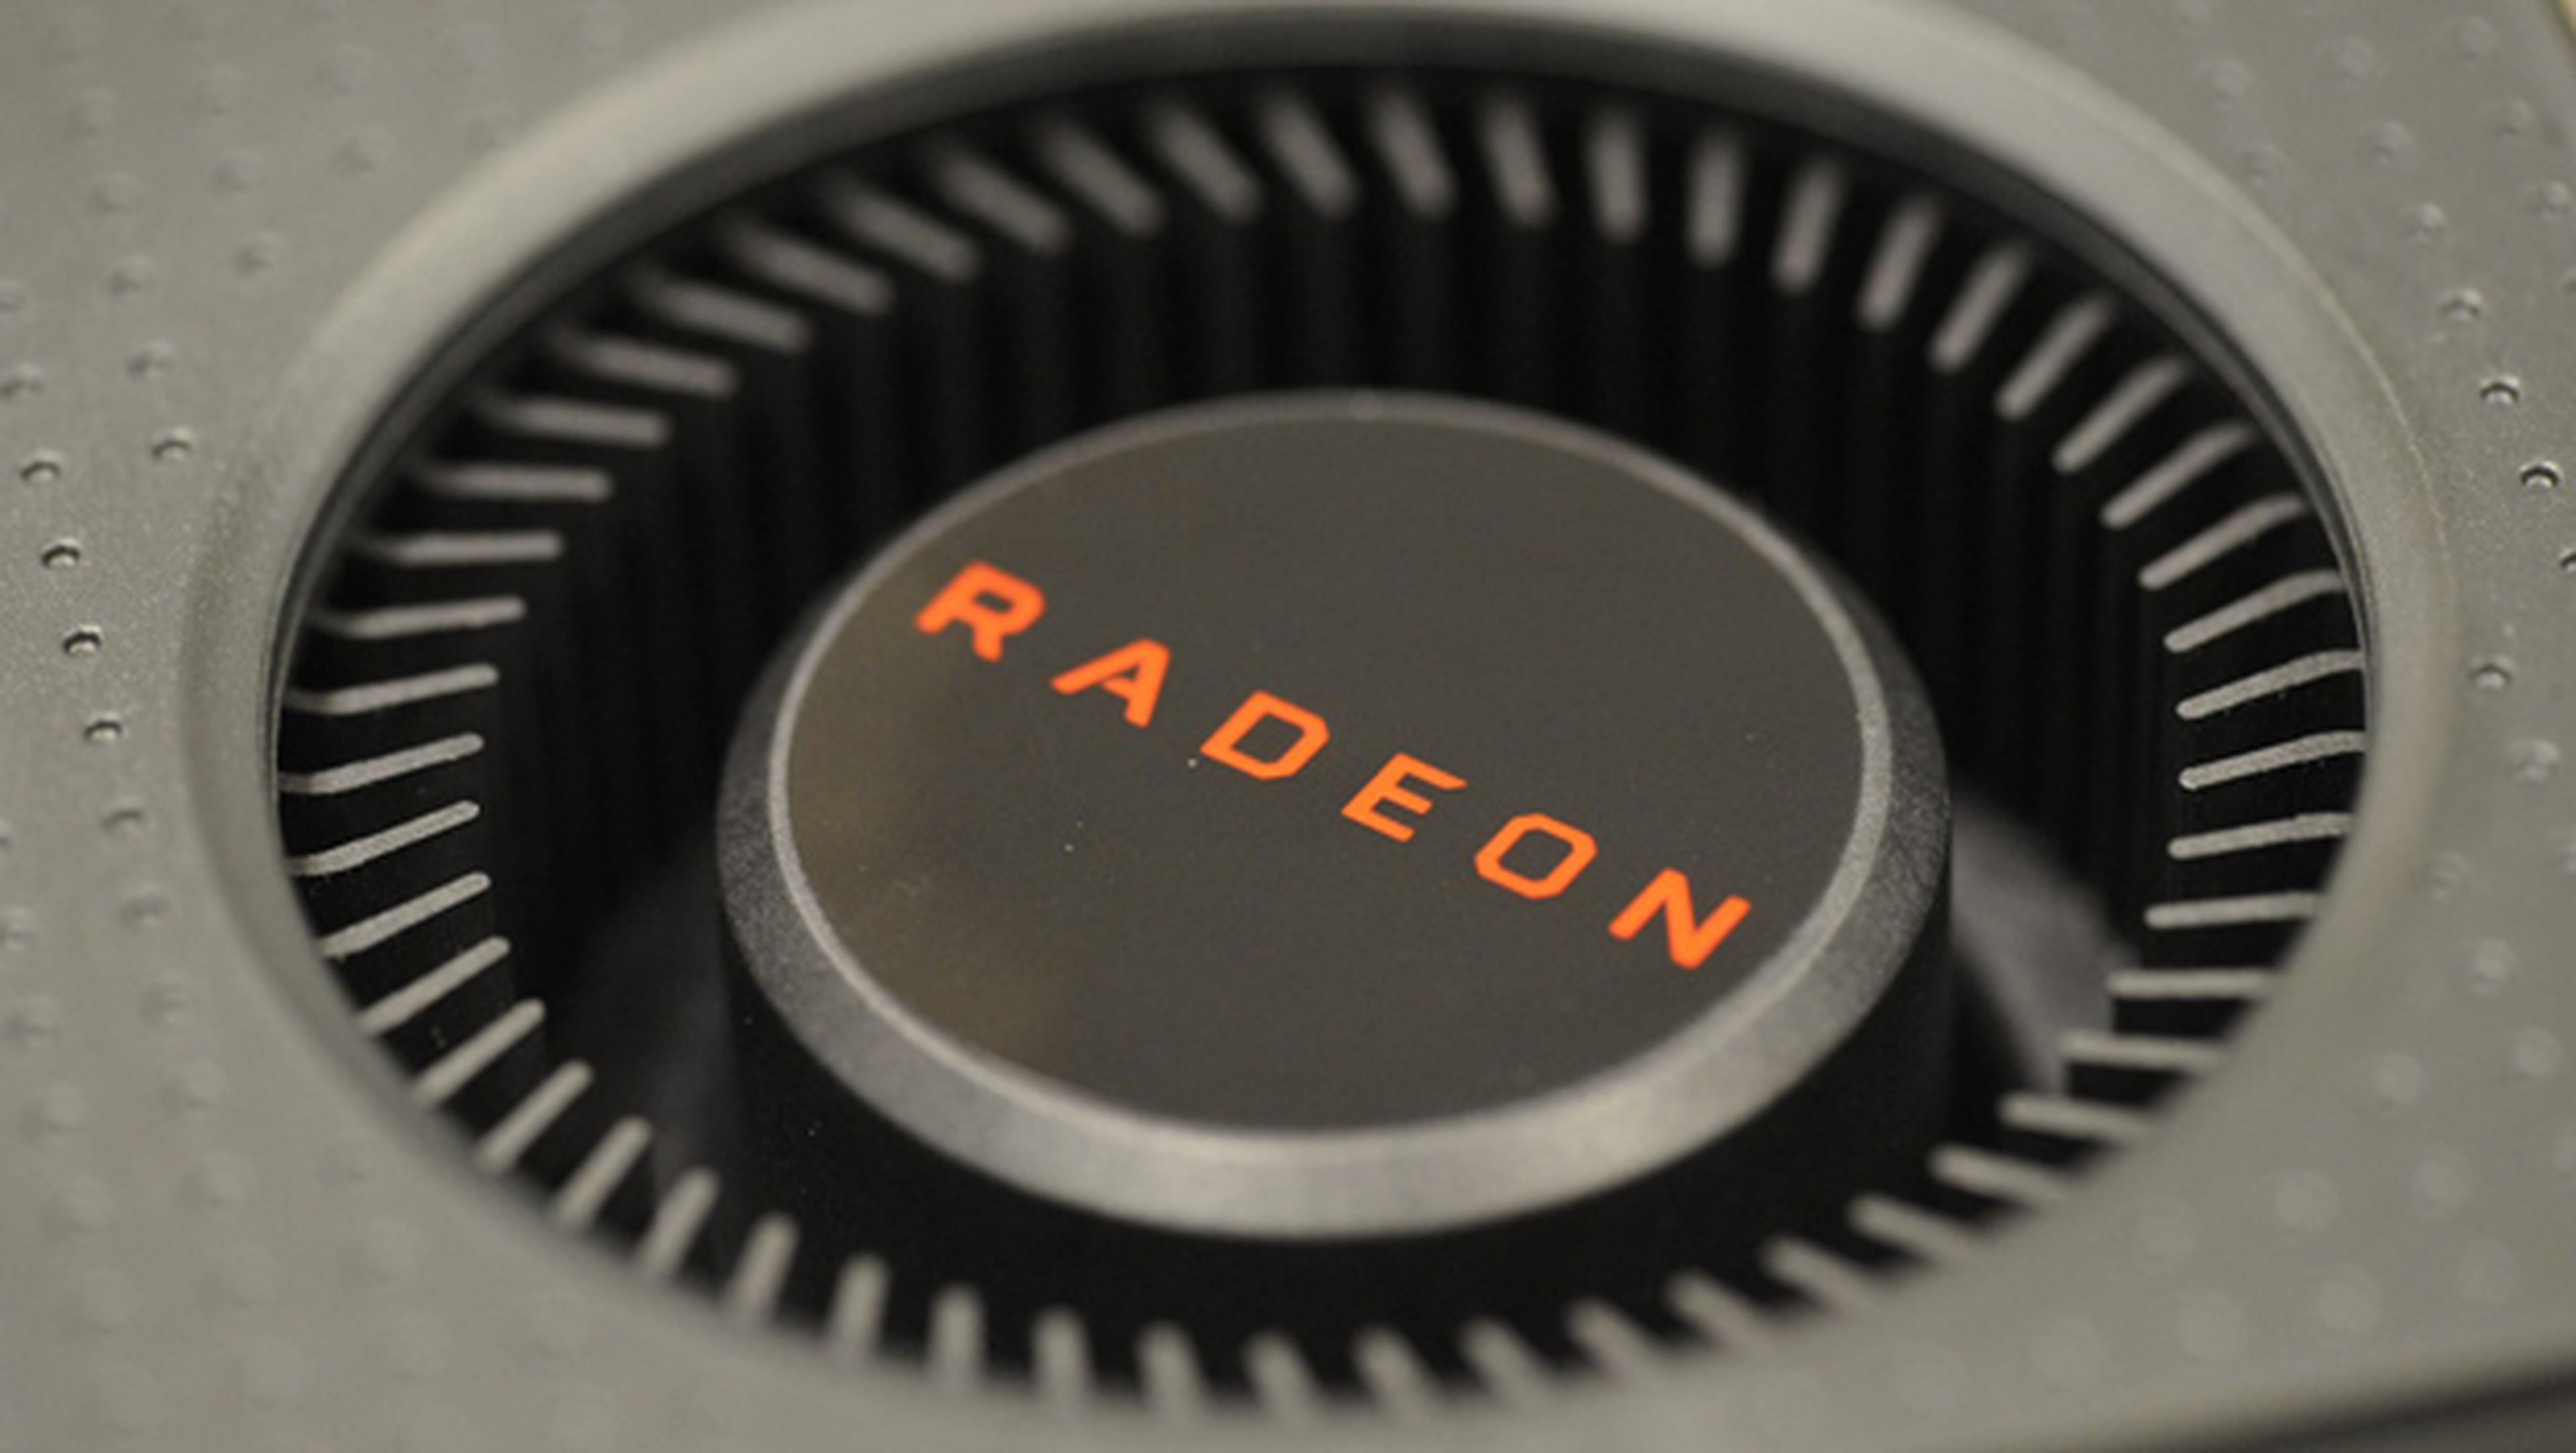 Así es la Sapphire AMD Radeon RX 480 en detalle